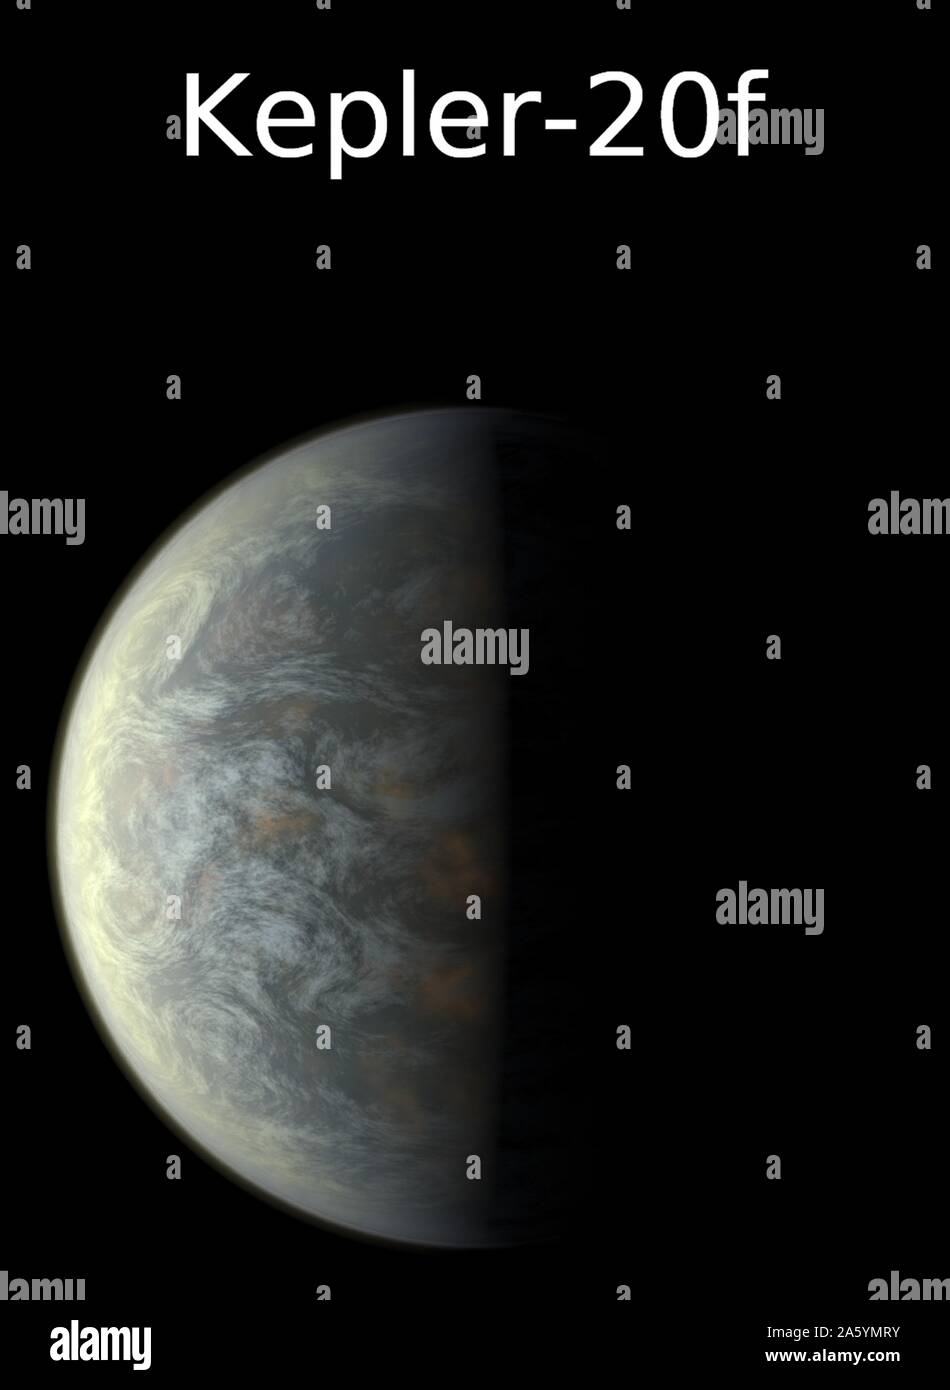 La missione kepler di nasas terras e venus ha scoperto i nuovi pianeti  immagini e fotografie stock ad alta risoluzione - Alamy